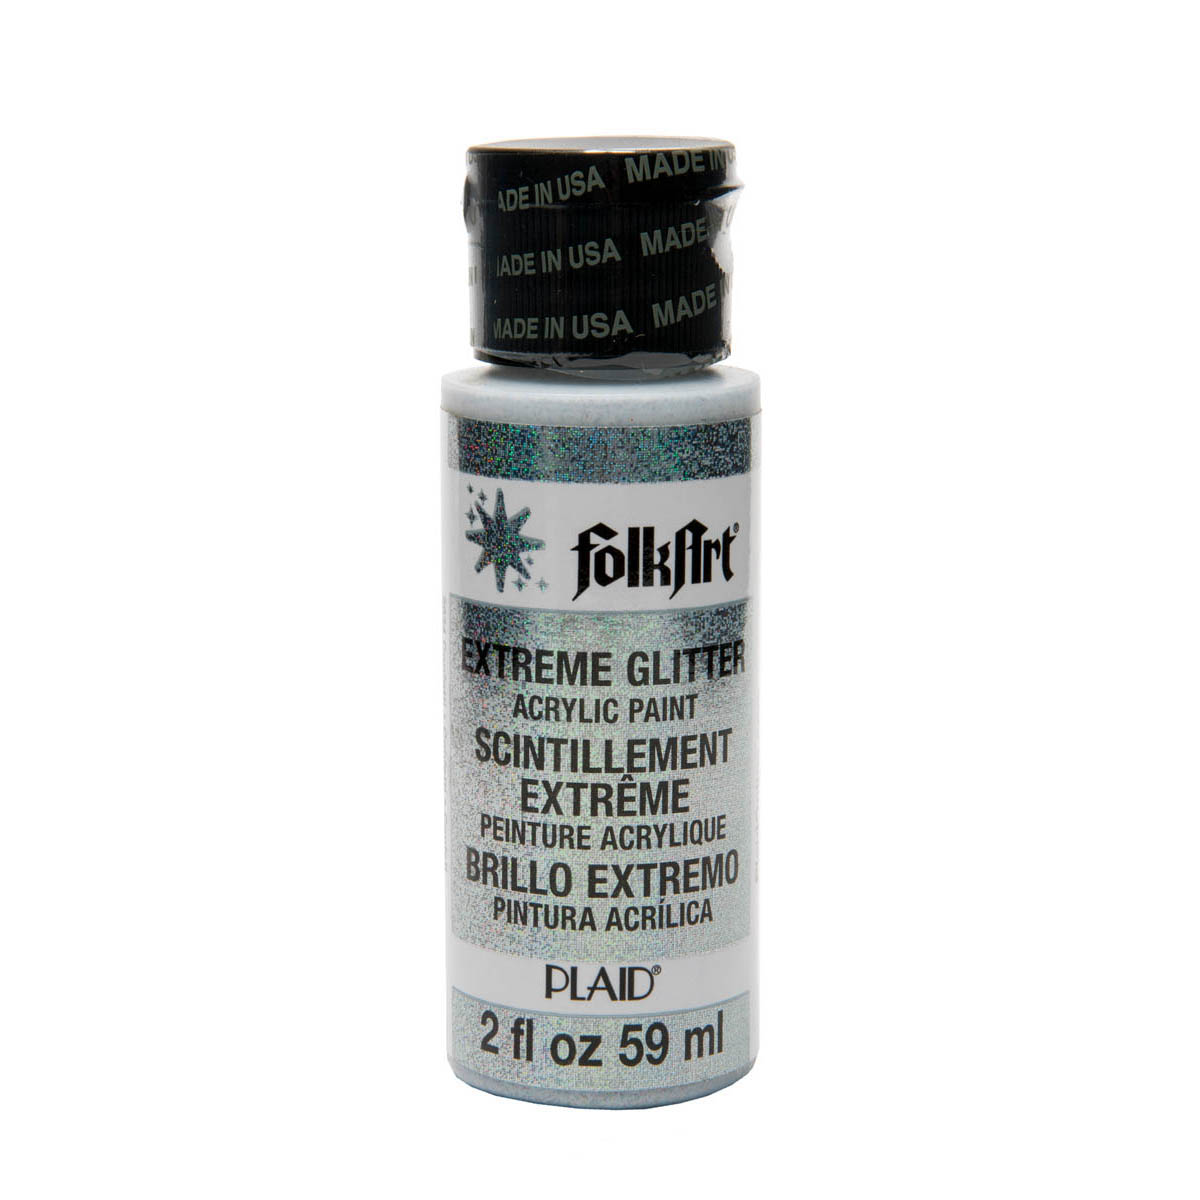 FolkArt ® Extreme Glitter™ - Confetti, 2 oz. - 2834